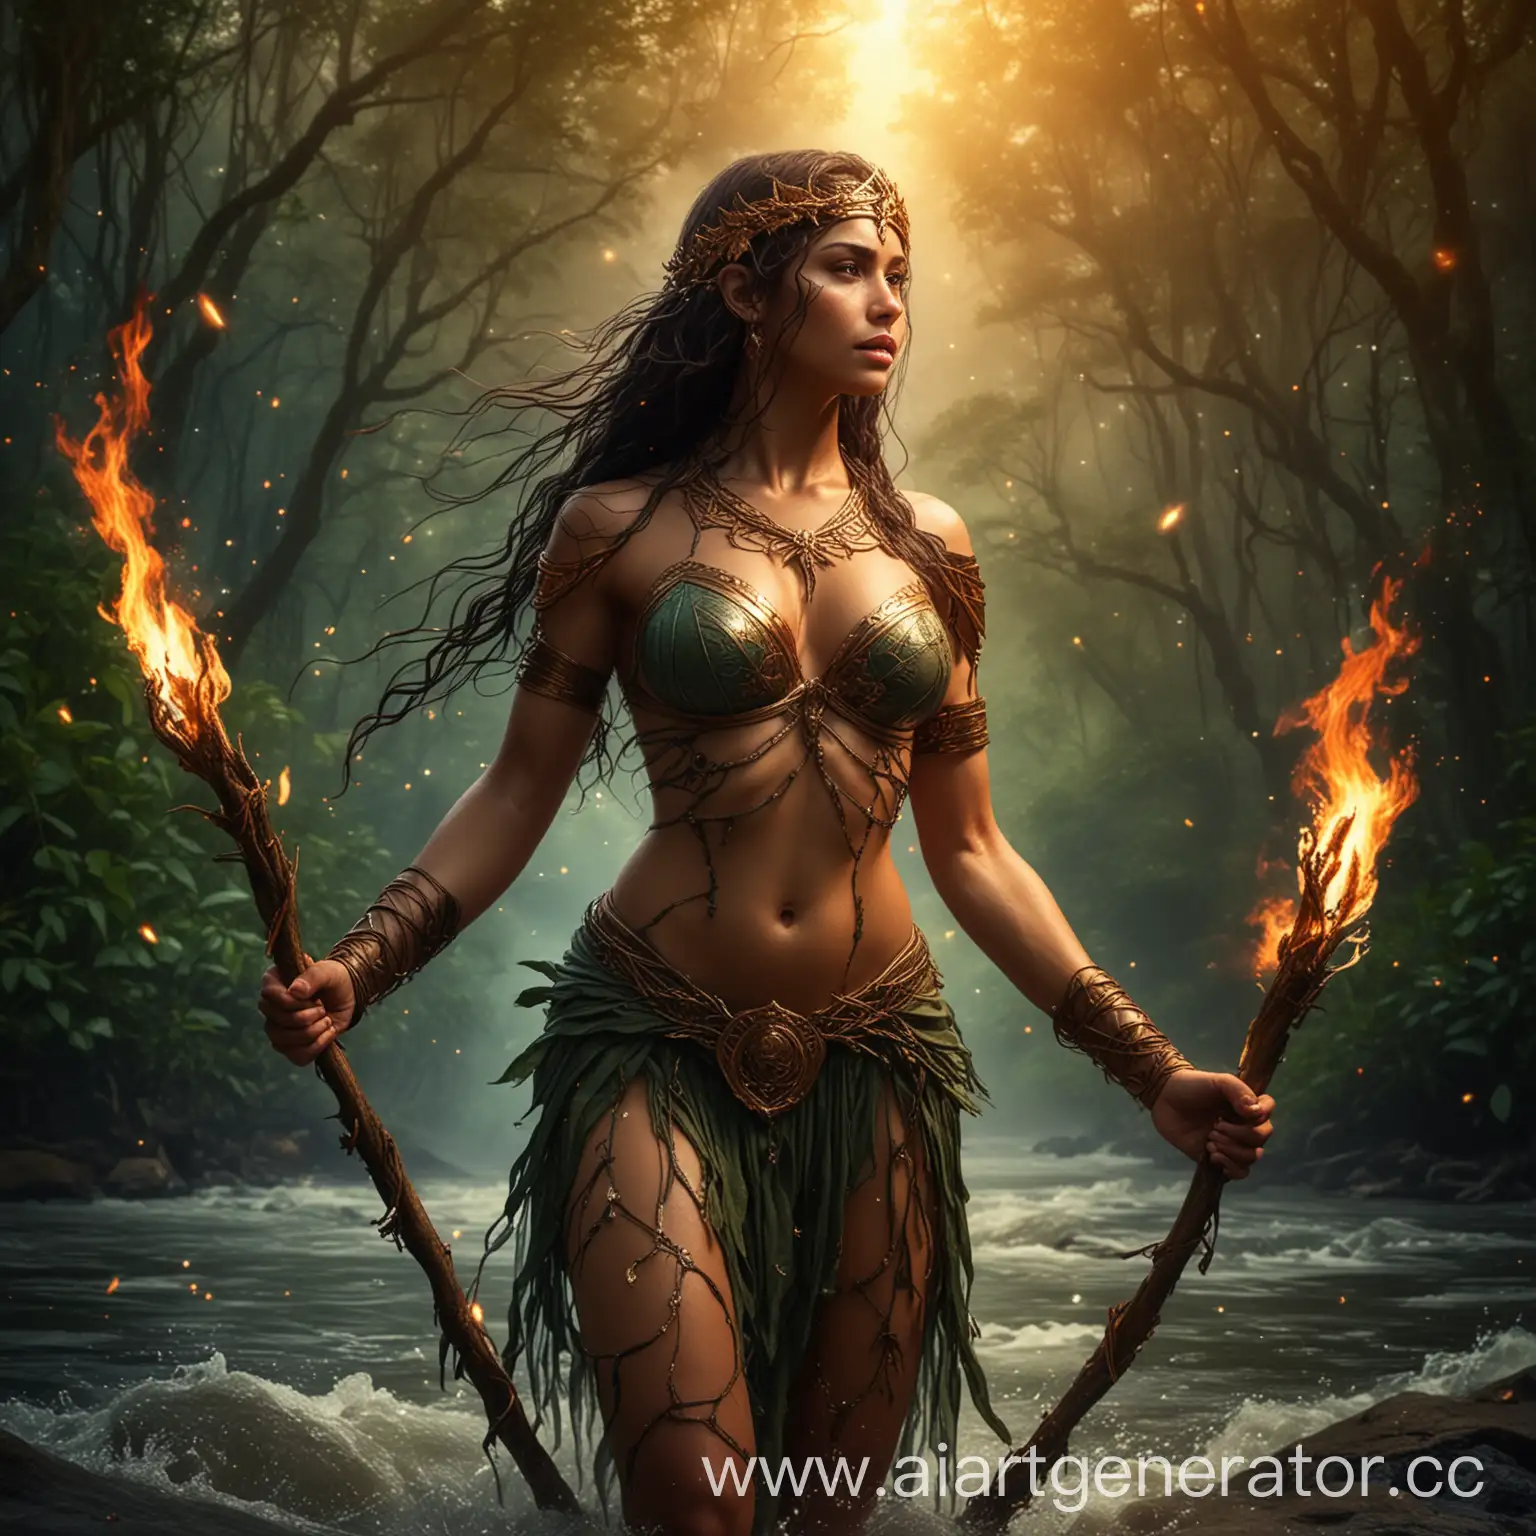 Богиня, амазонка, воительница, лианы, река, огонь, звезды